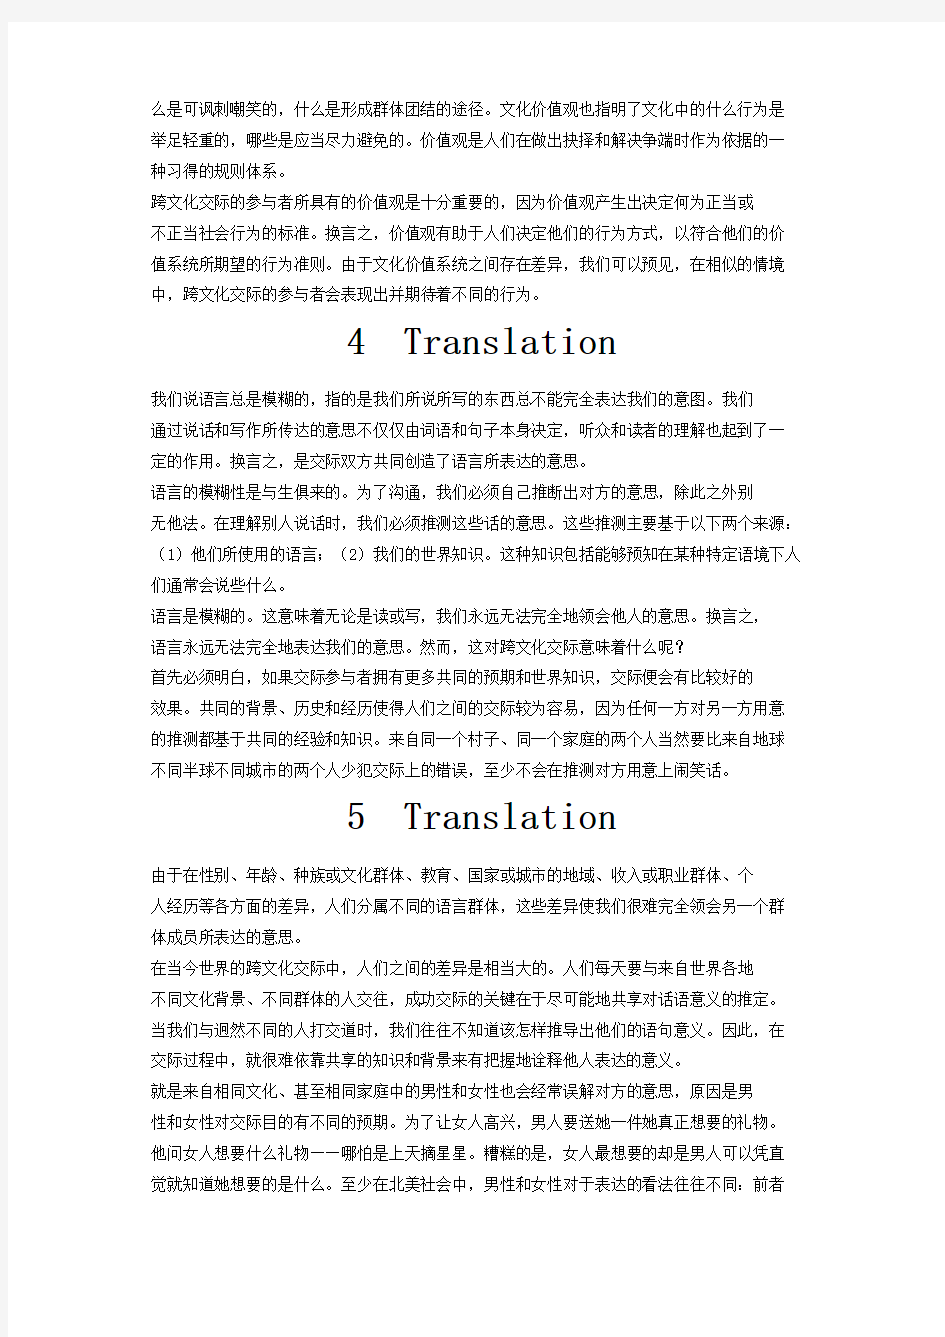 Translation(跨文化交际)